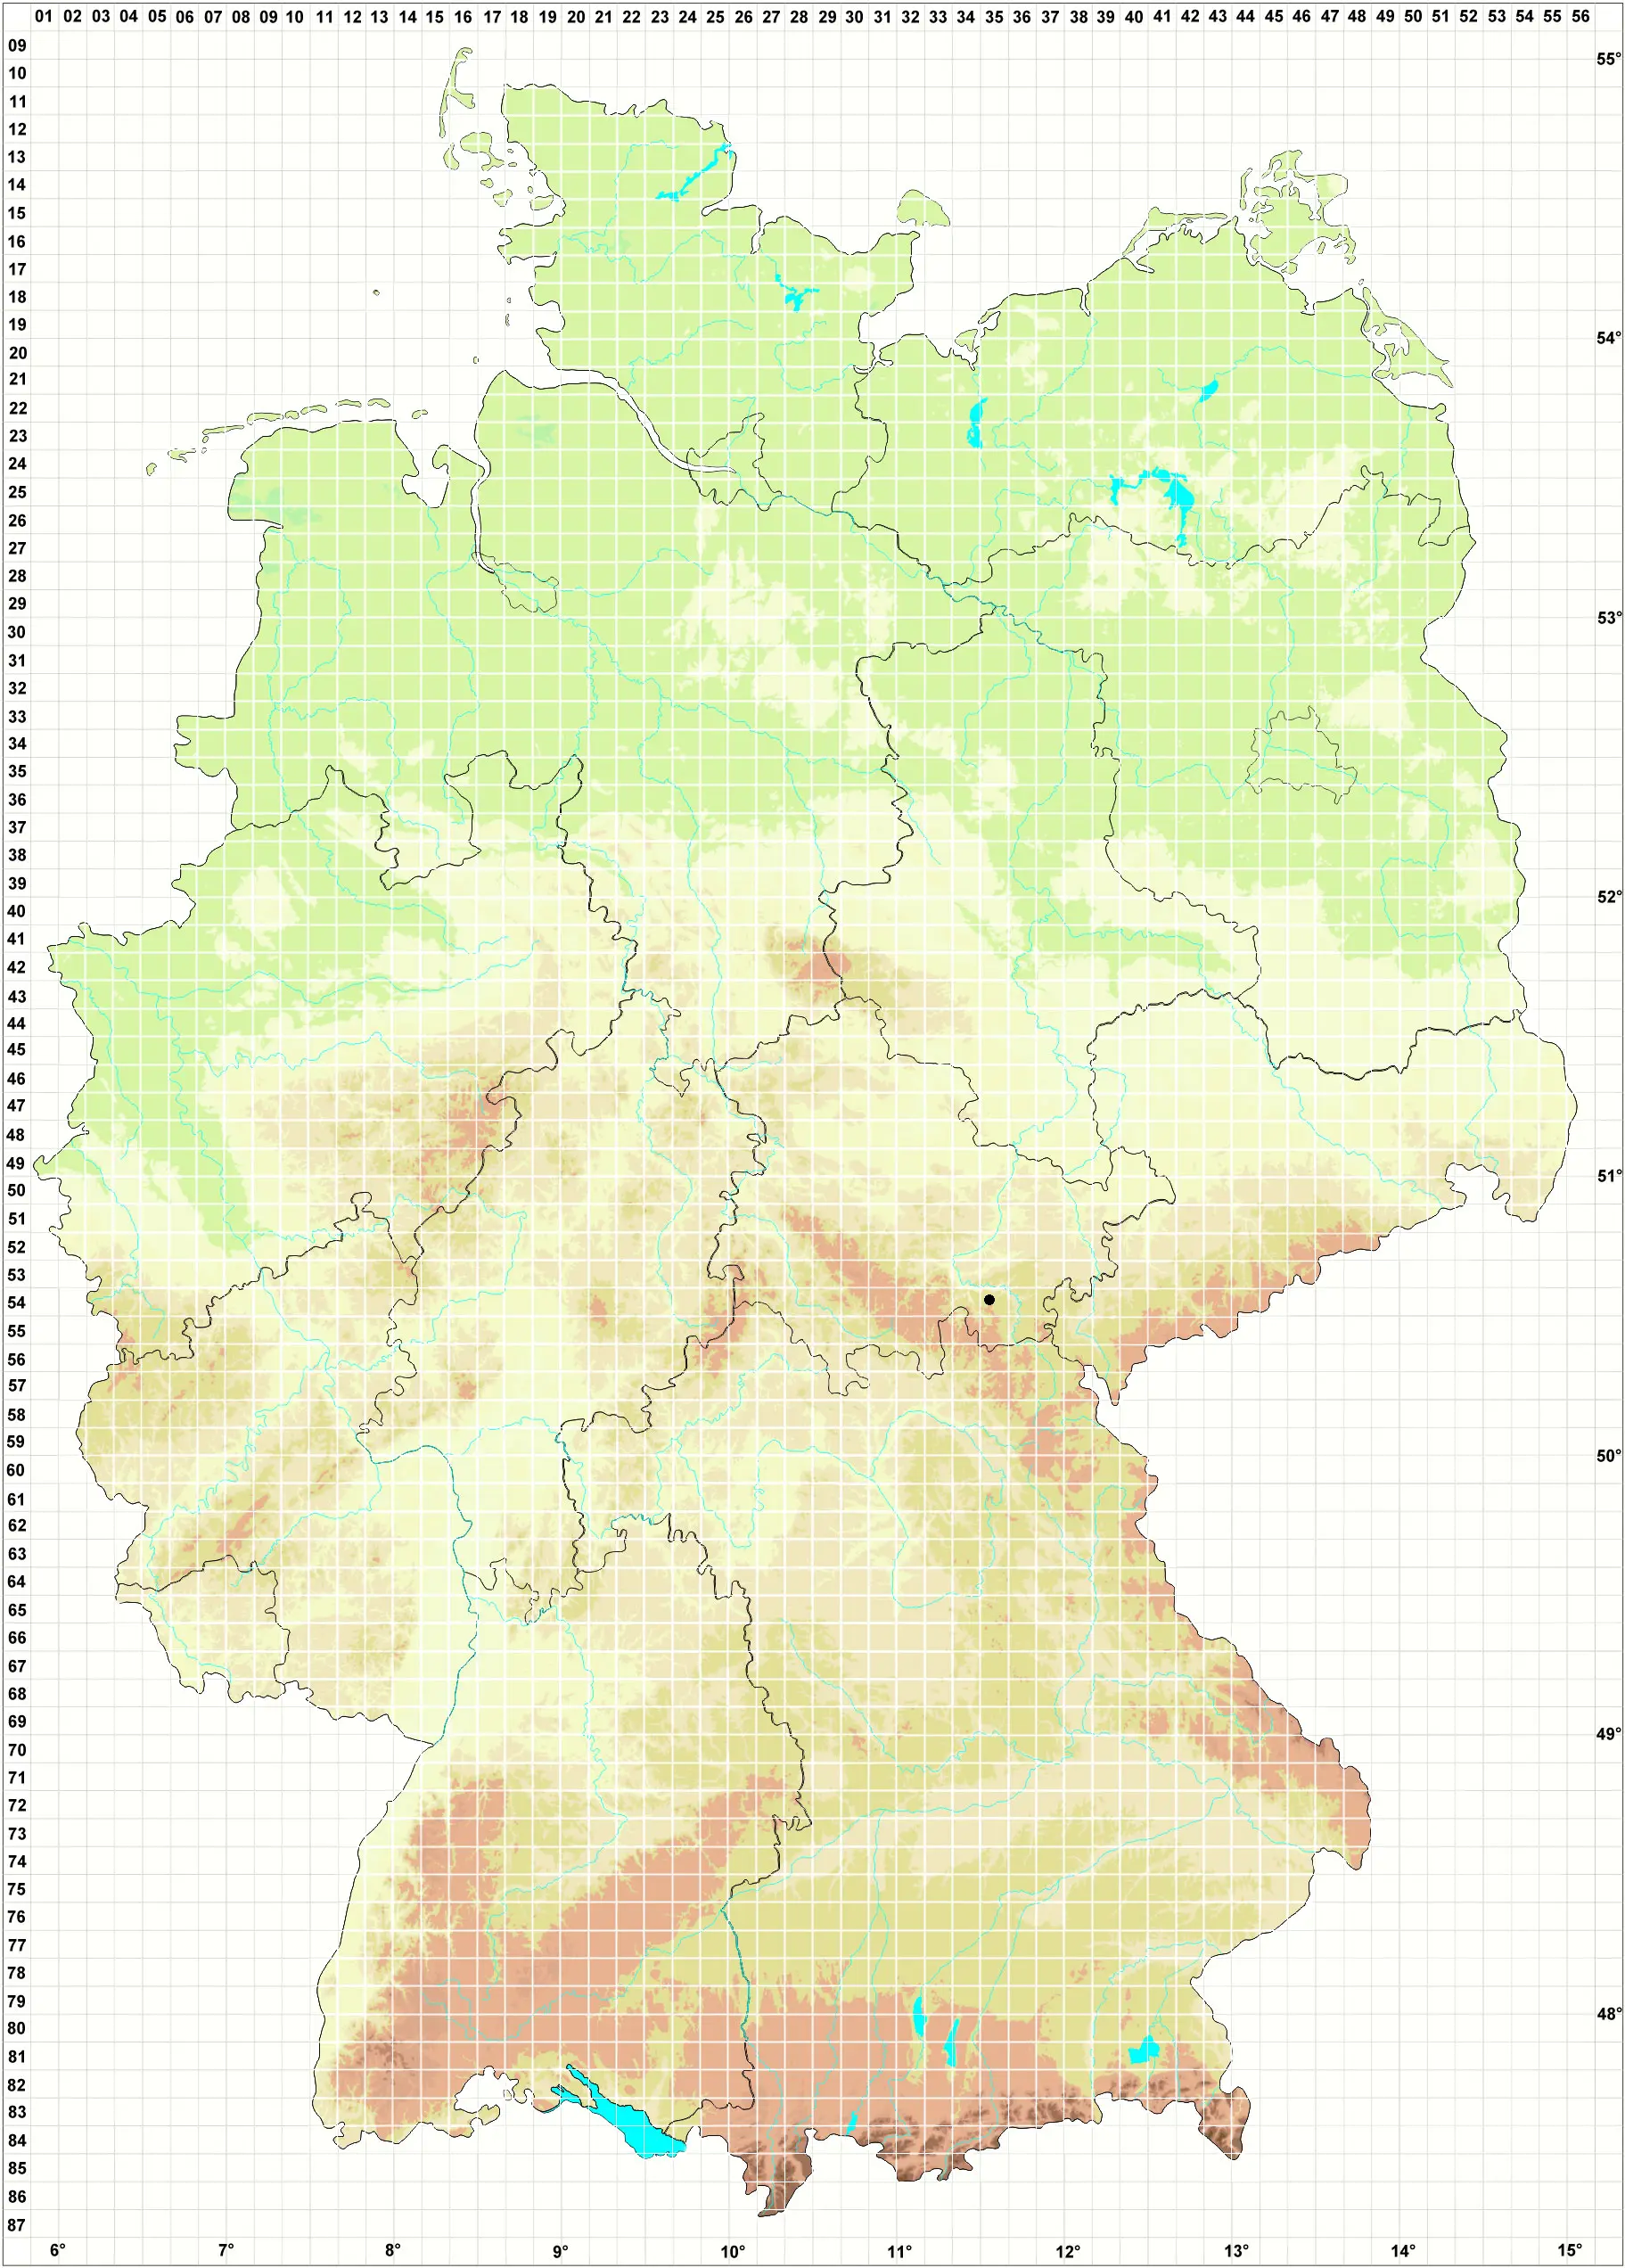 Karte H. Grünberg, D. Berger, L. Meinunger, W. Schröder 01.11.2006